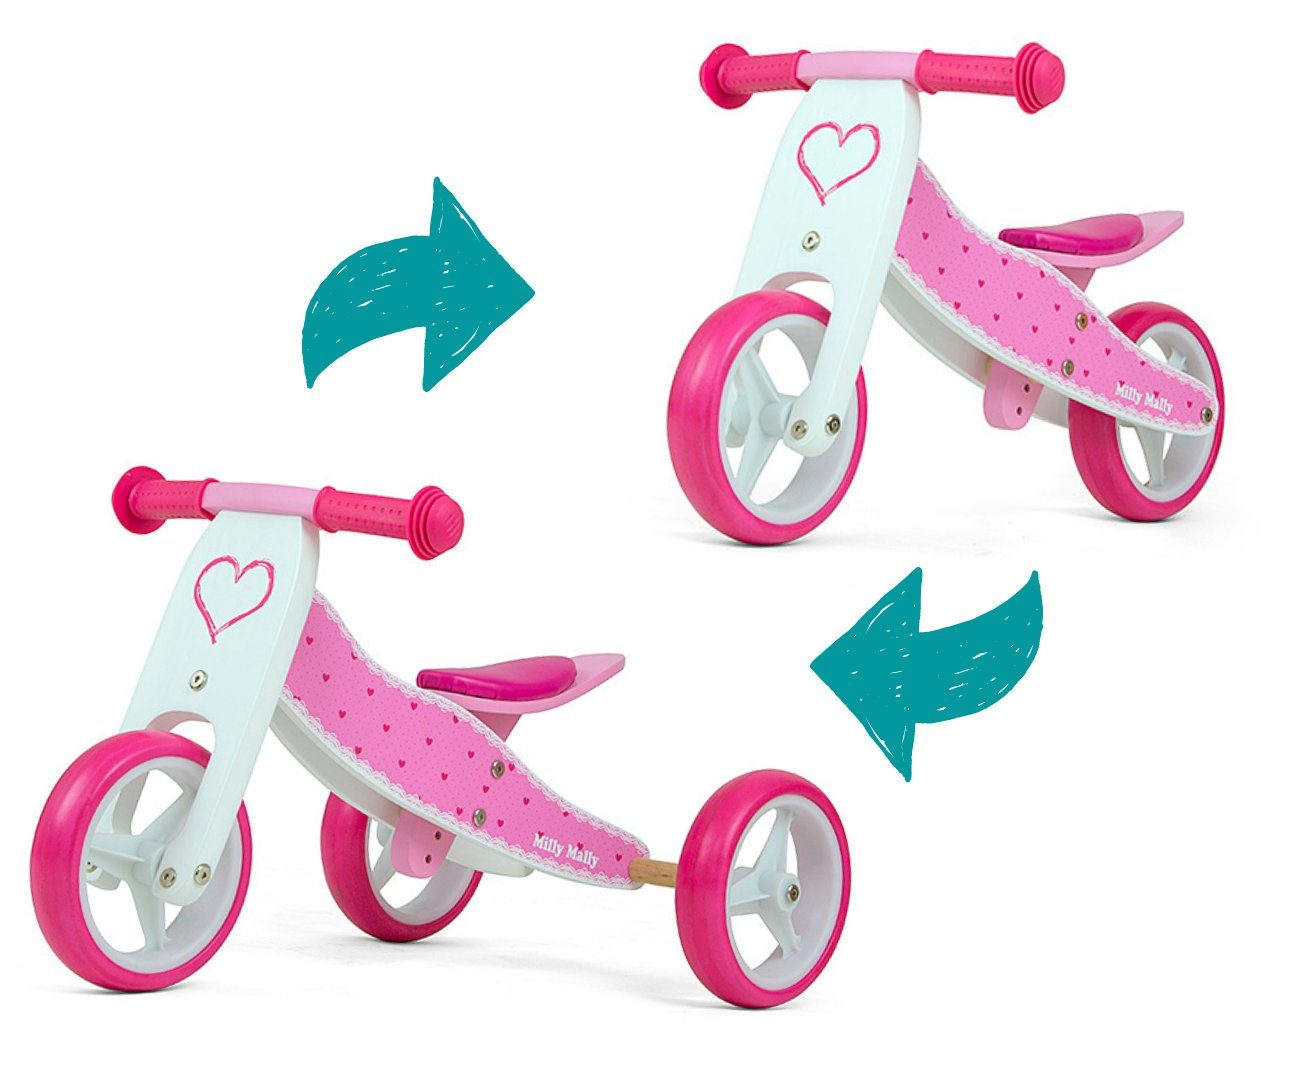 Lauflernrad Balance Hearts Kinder • • 18M+ • aus LeNoSa Dreirad Bike Milly 2in1 Alter für Laufrad • Rutscher Holz Mally